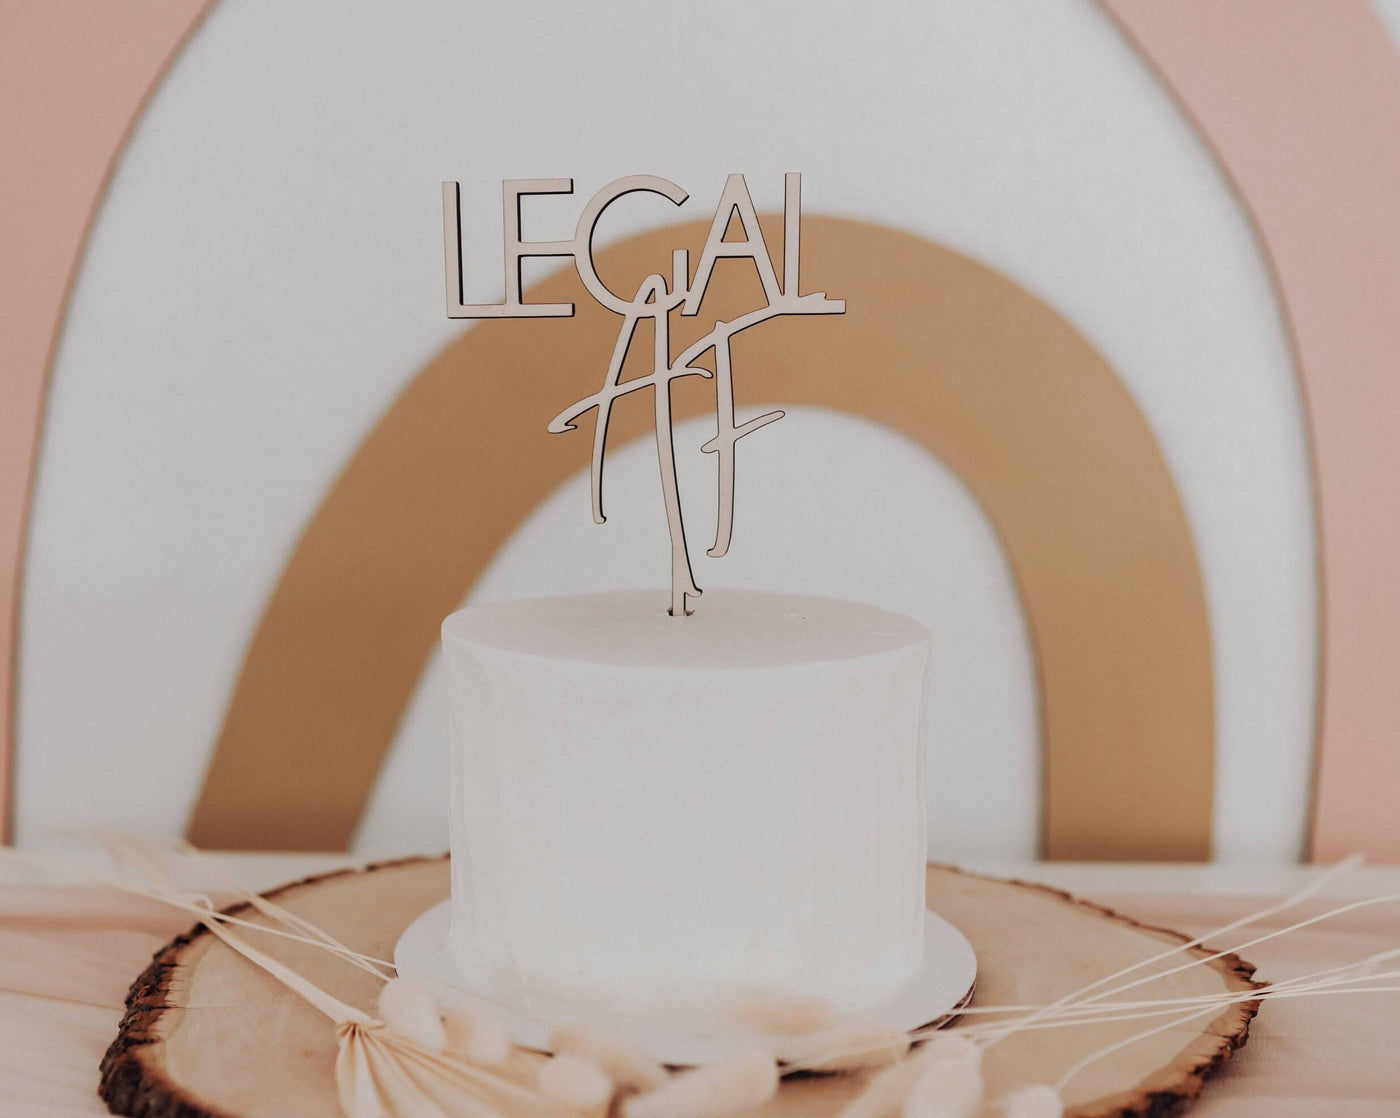 Legal AF Cake Topper